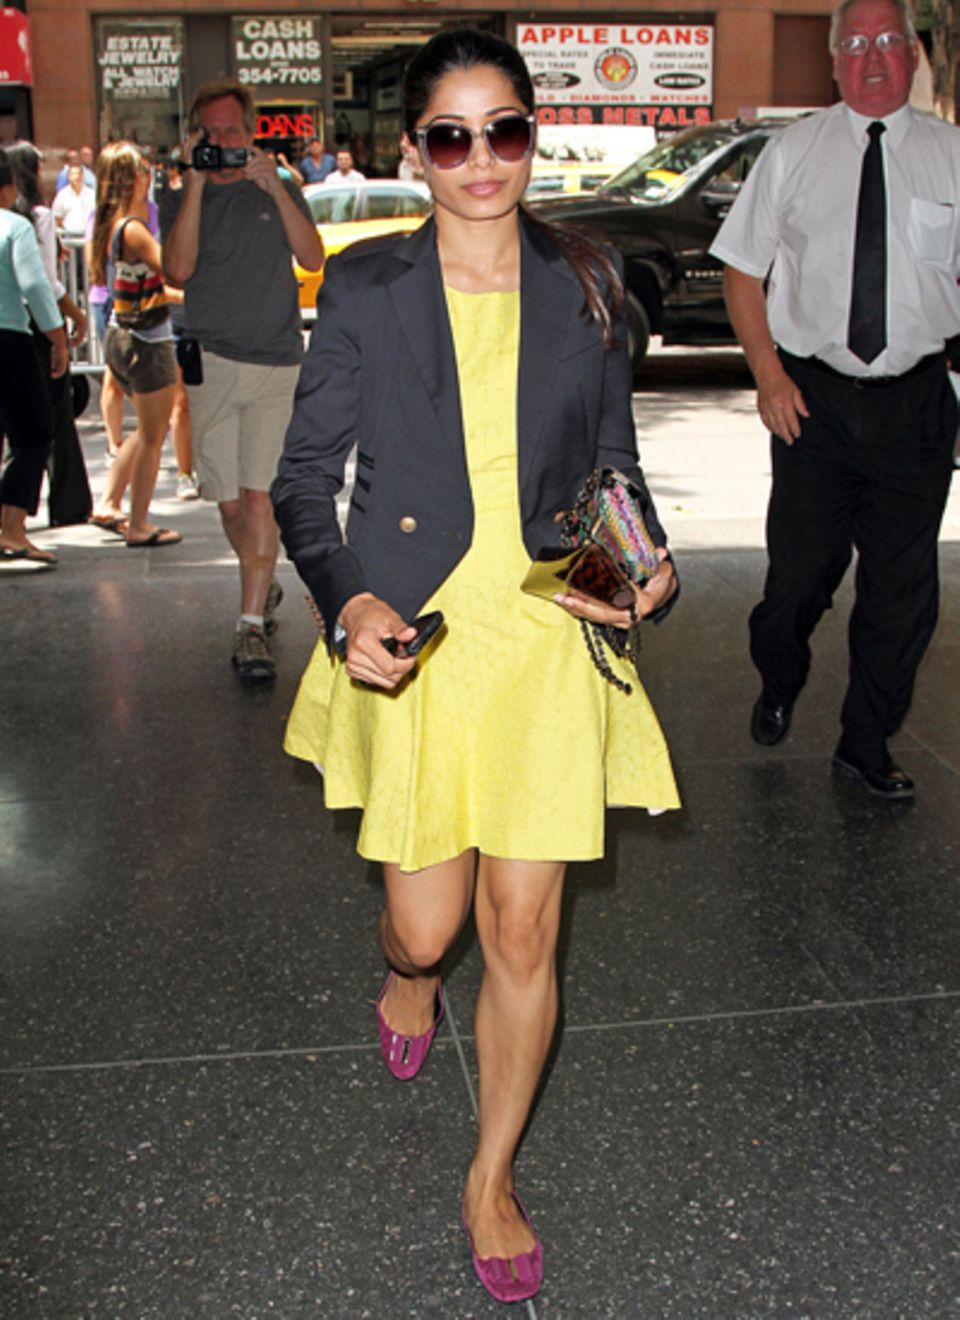 Slumdog-Millionär-Darstellerin Freida Pinto ist in New York mit einem gelben Kleid von Rachel Roy unterwegs. Dazu kombiniert sie